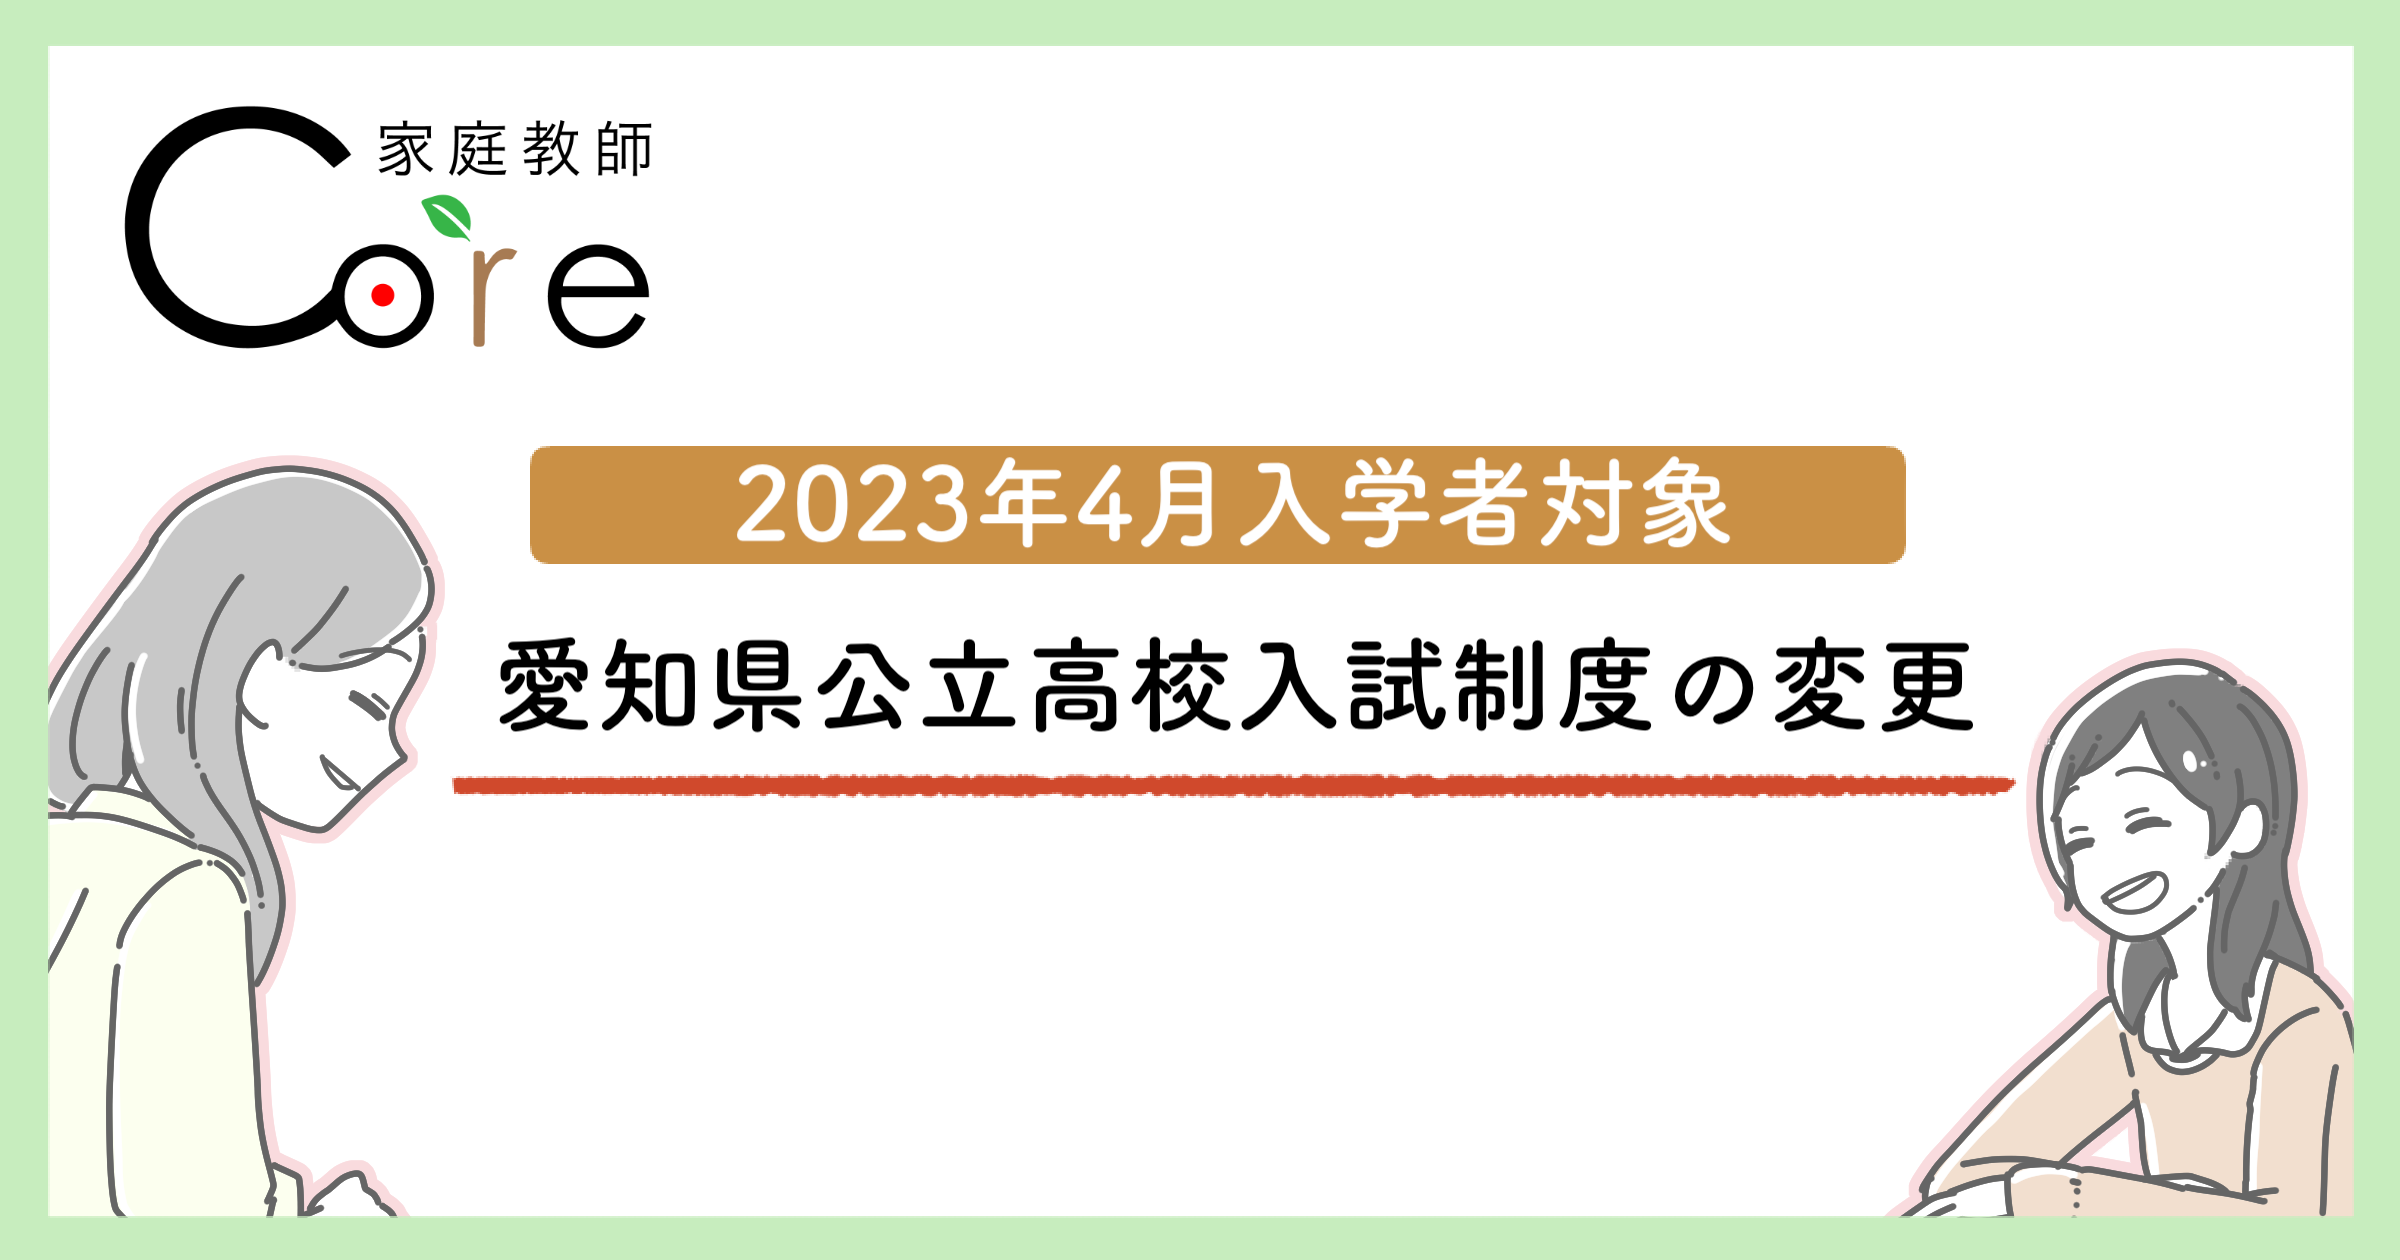 愛知県公立高校入試制度が変わります！【2023年4月入学者が対象】